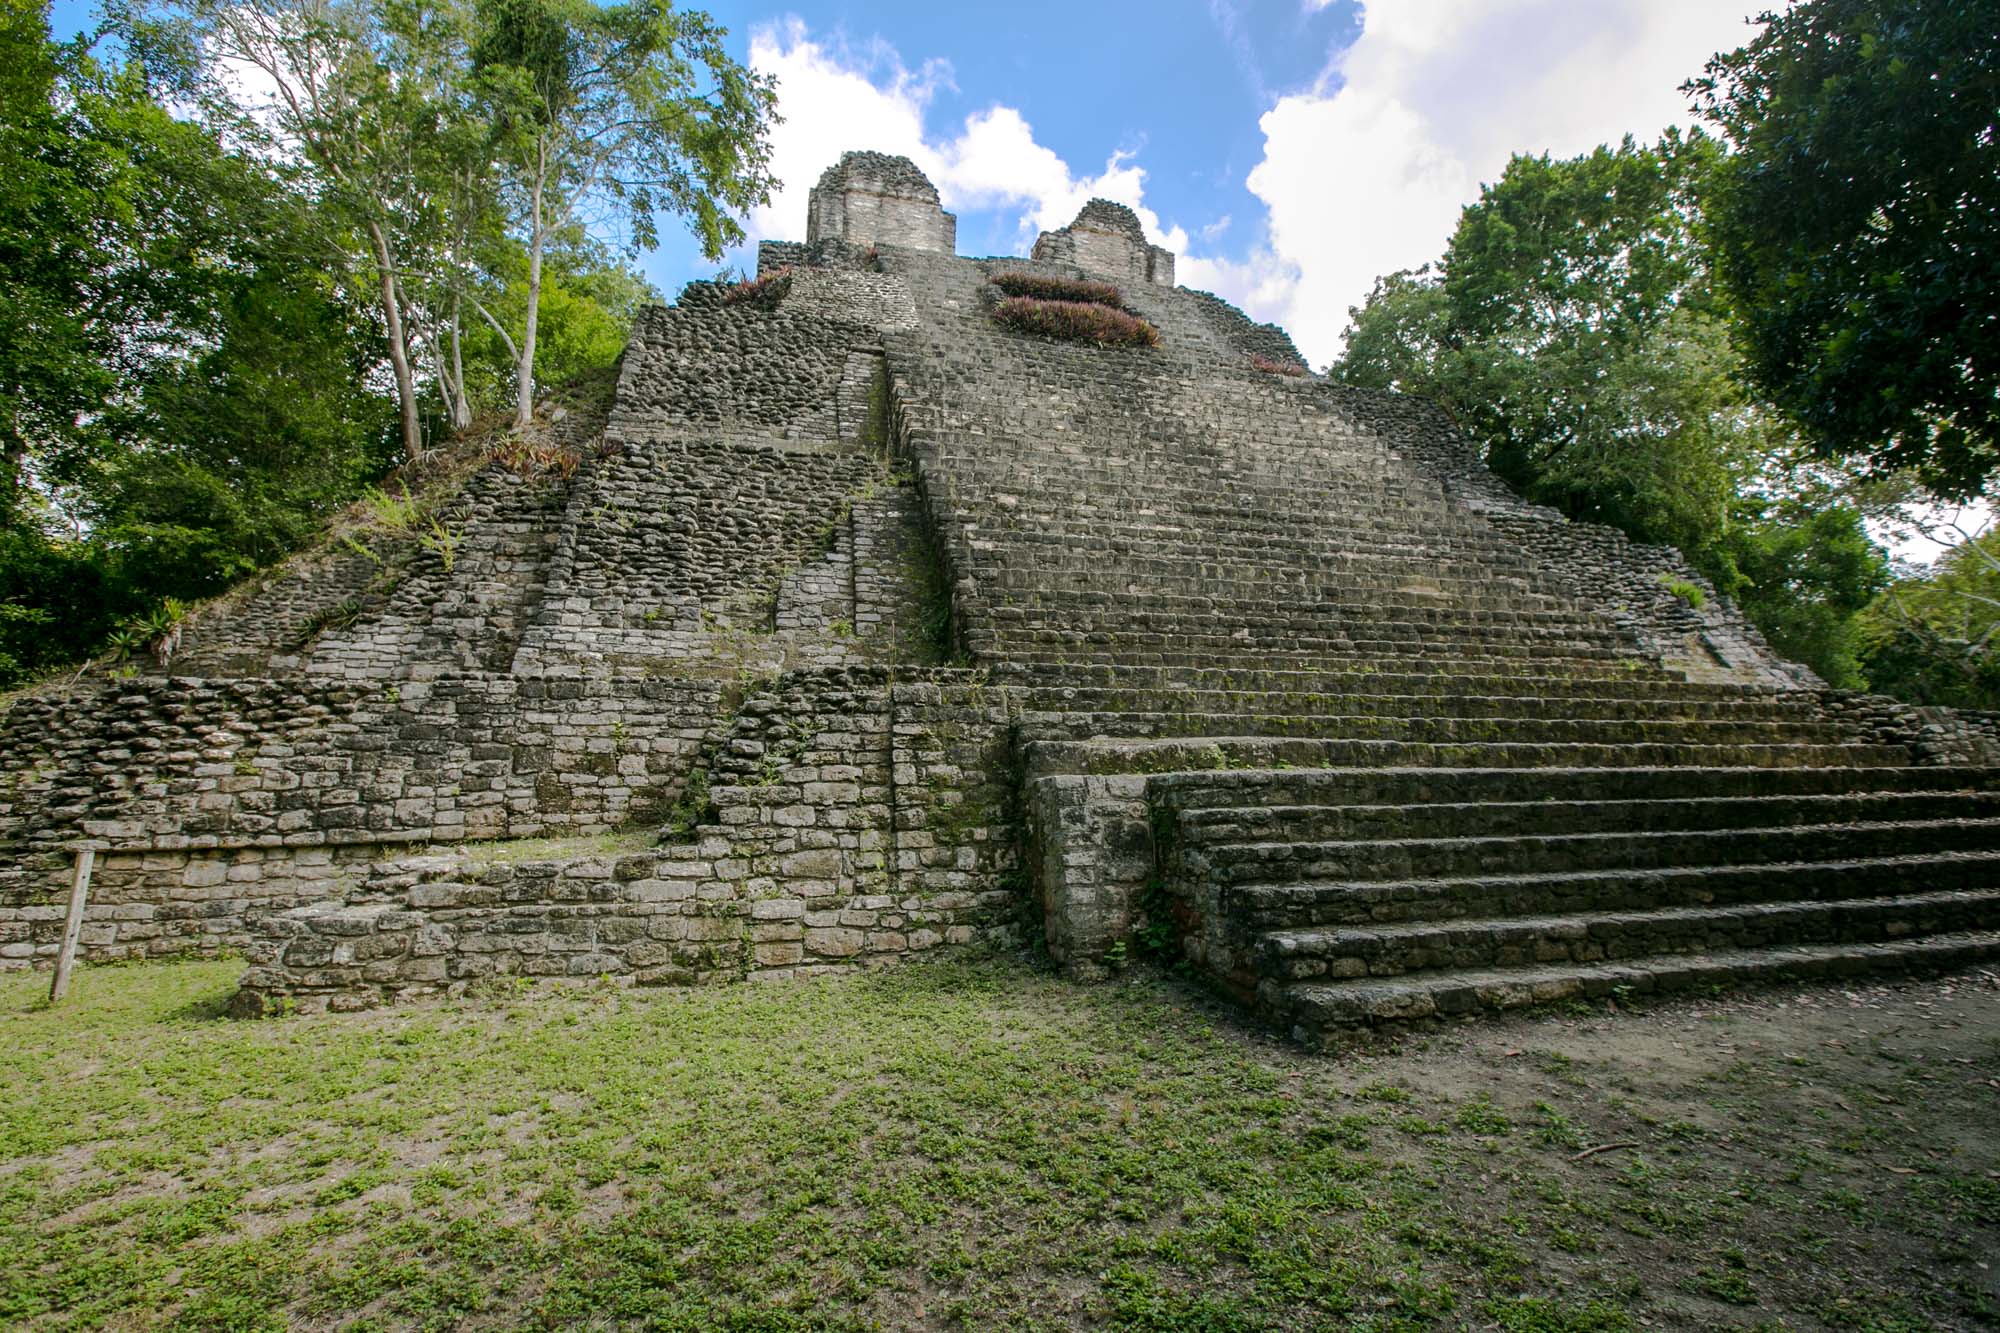 Edificio 1 at Mayan ruins of Dzibanche in Mexico